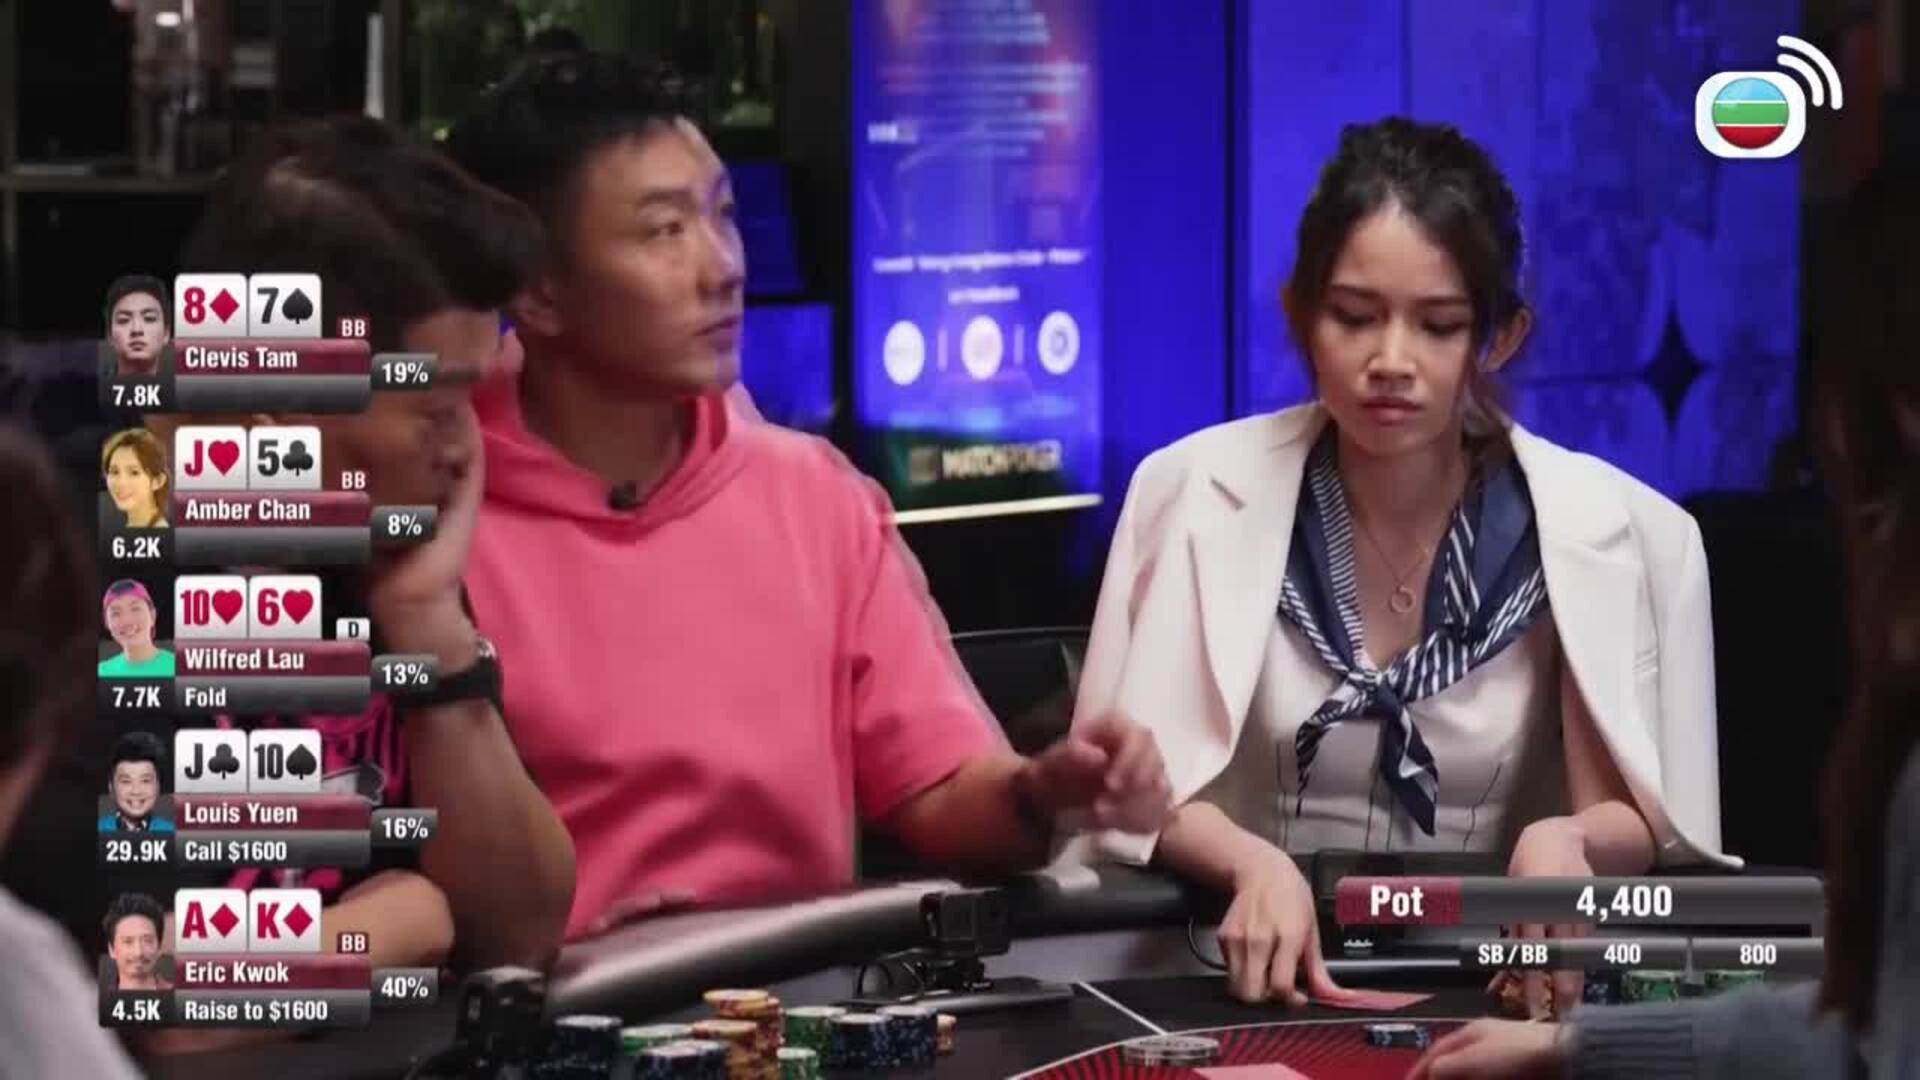 鋪鋪Poker-Po-Po-Poker